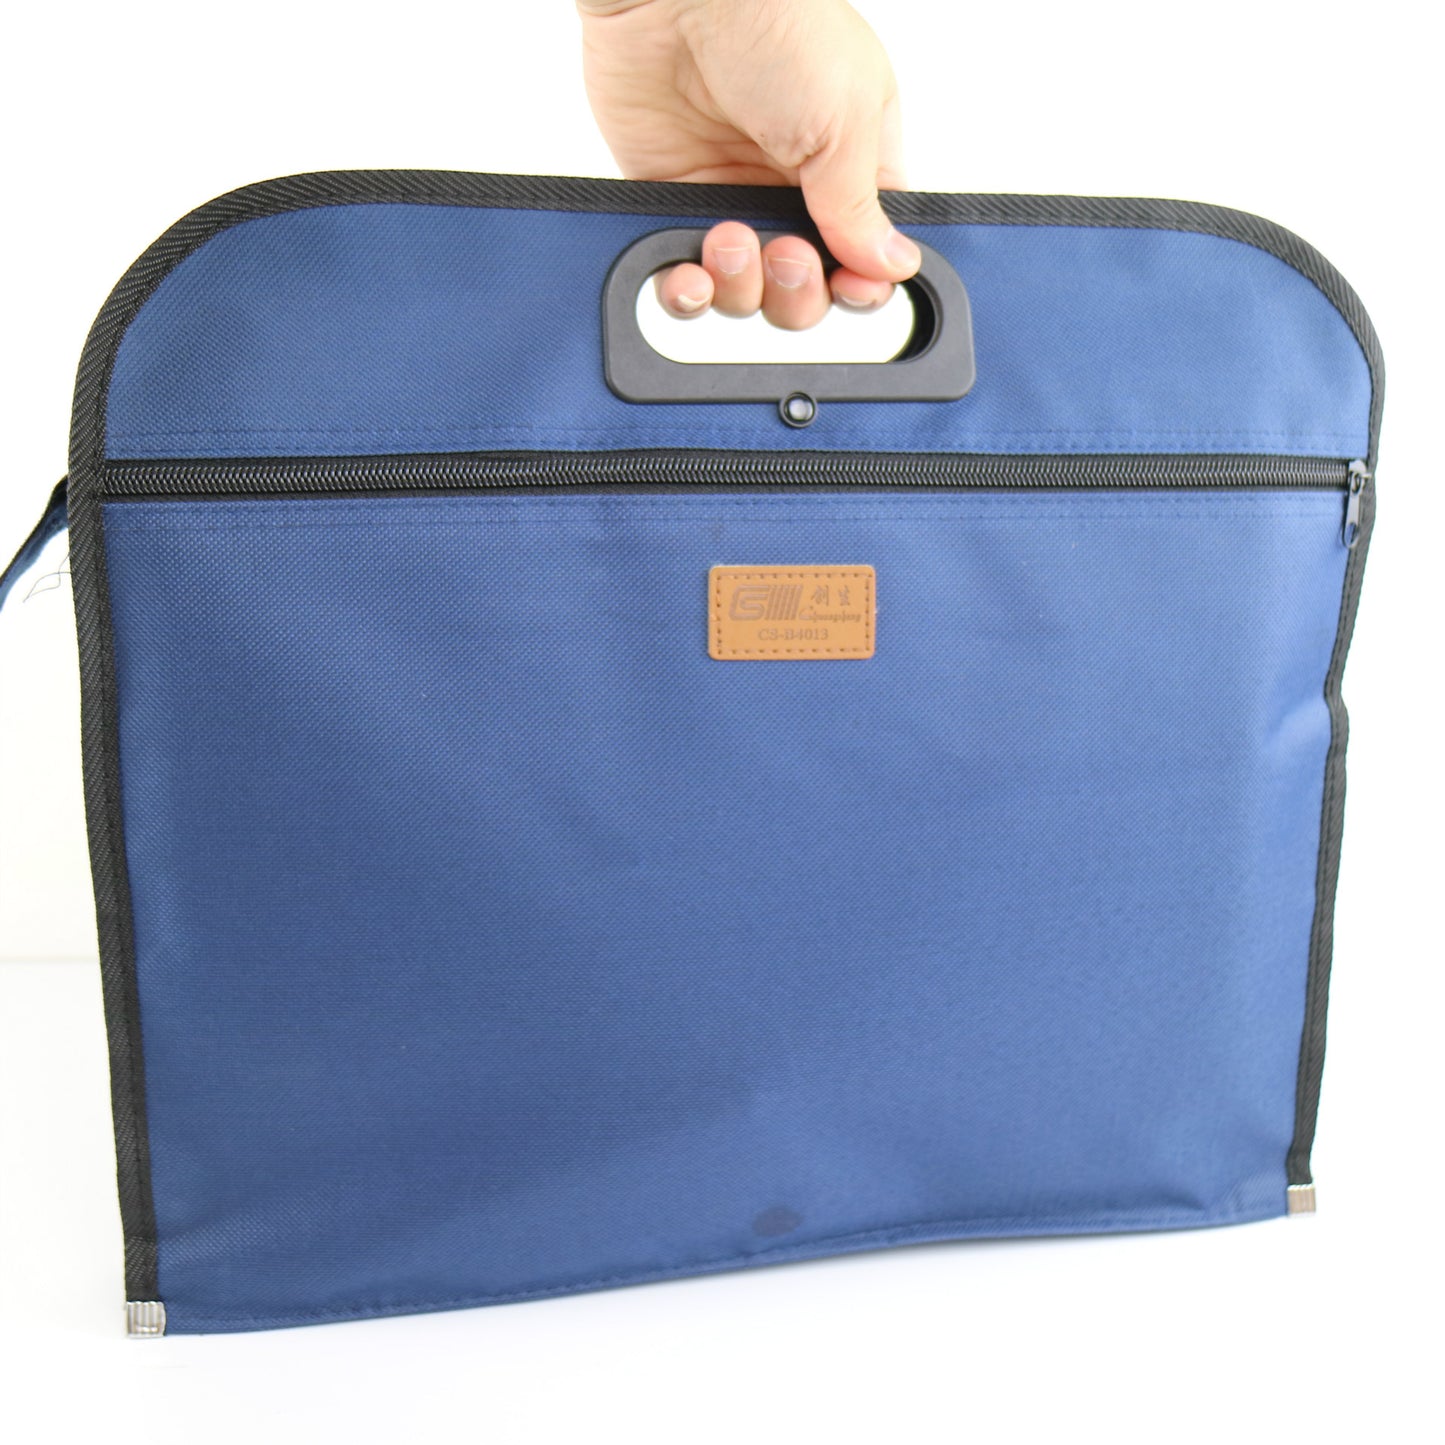 Business Documents holder Zipper Bag Mens Soft Tote Casual Handbag